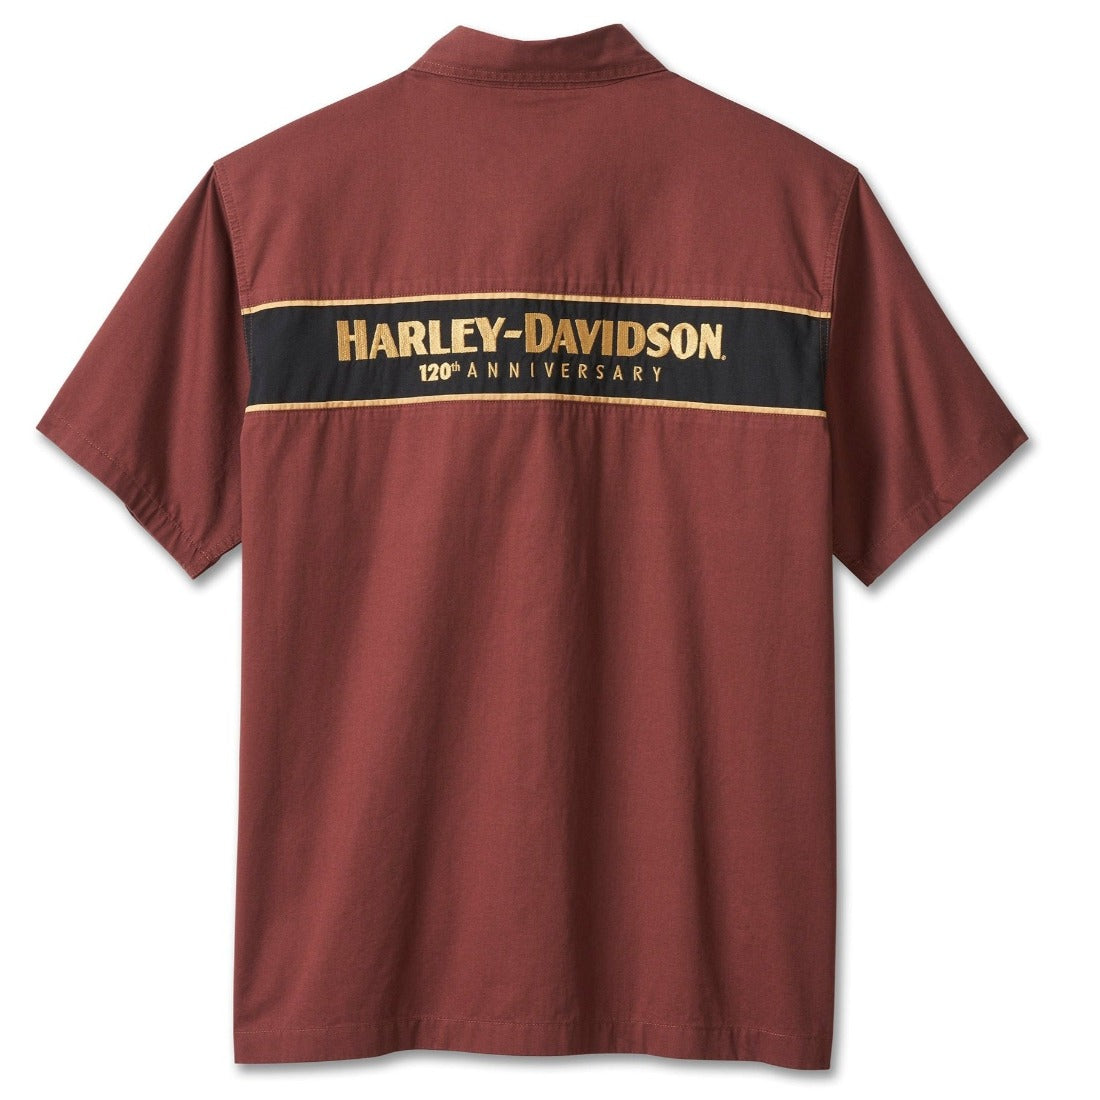 Harley-Davidson Men's 120th Anniversary Mechanic Shirt, Rum Raisin